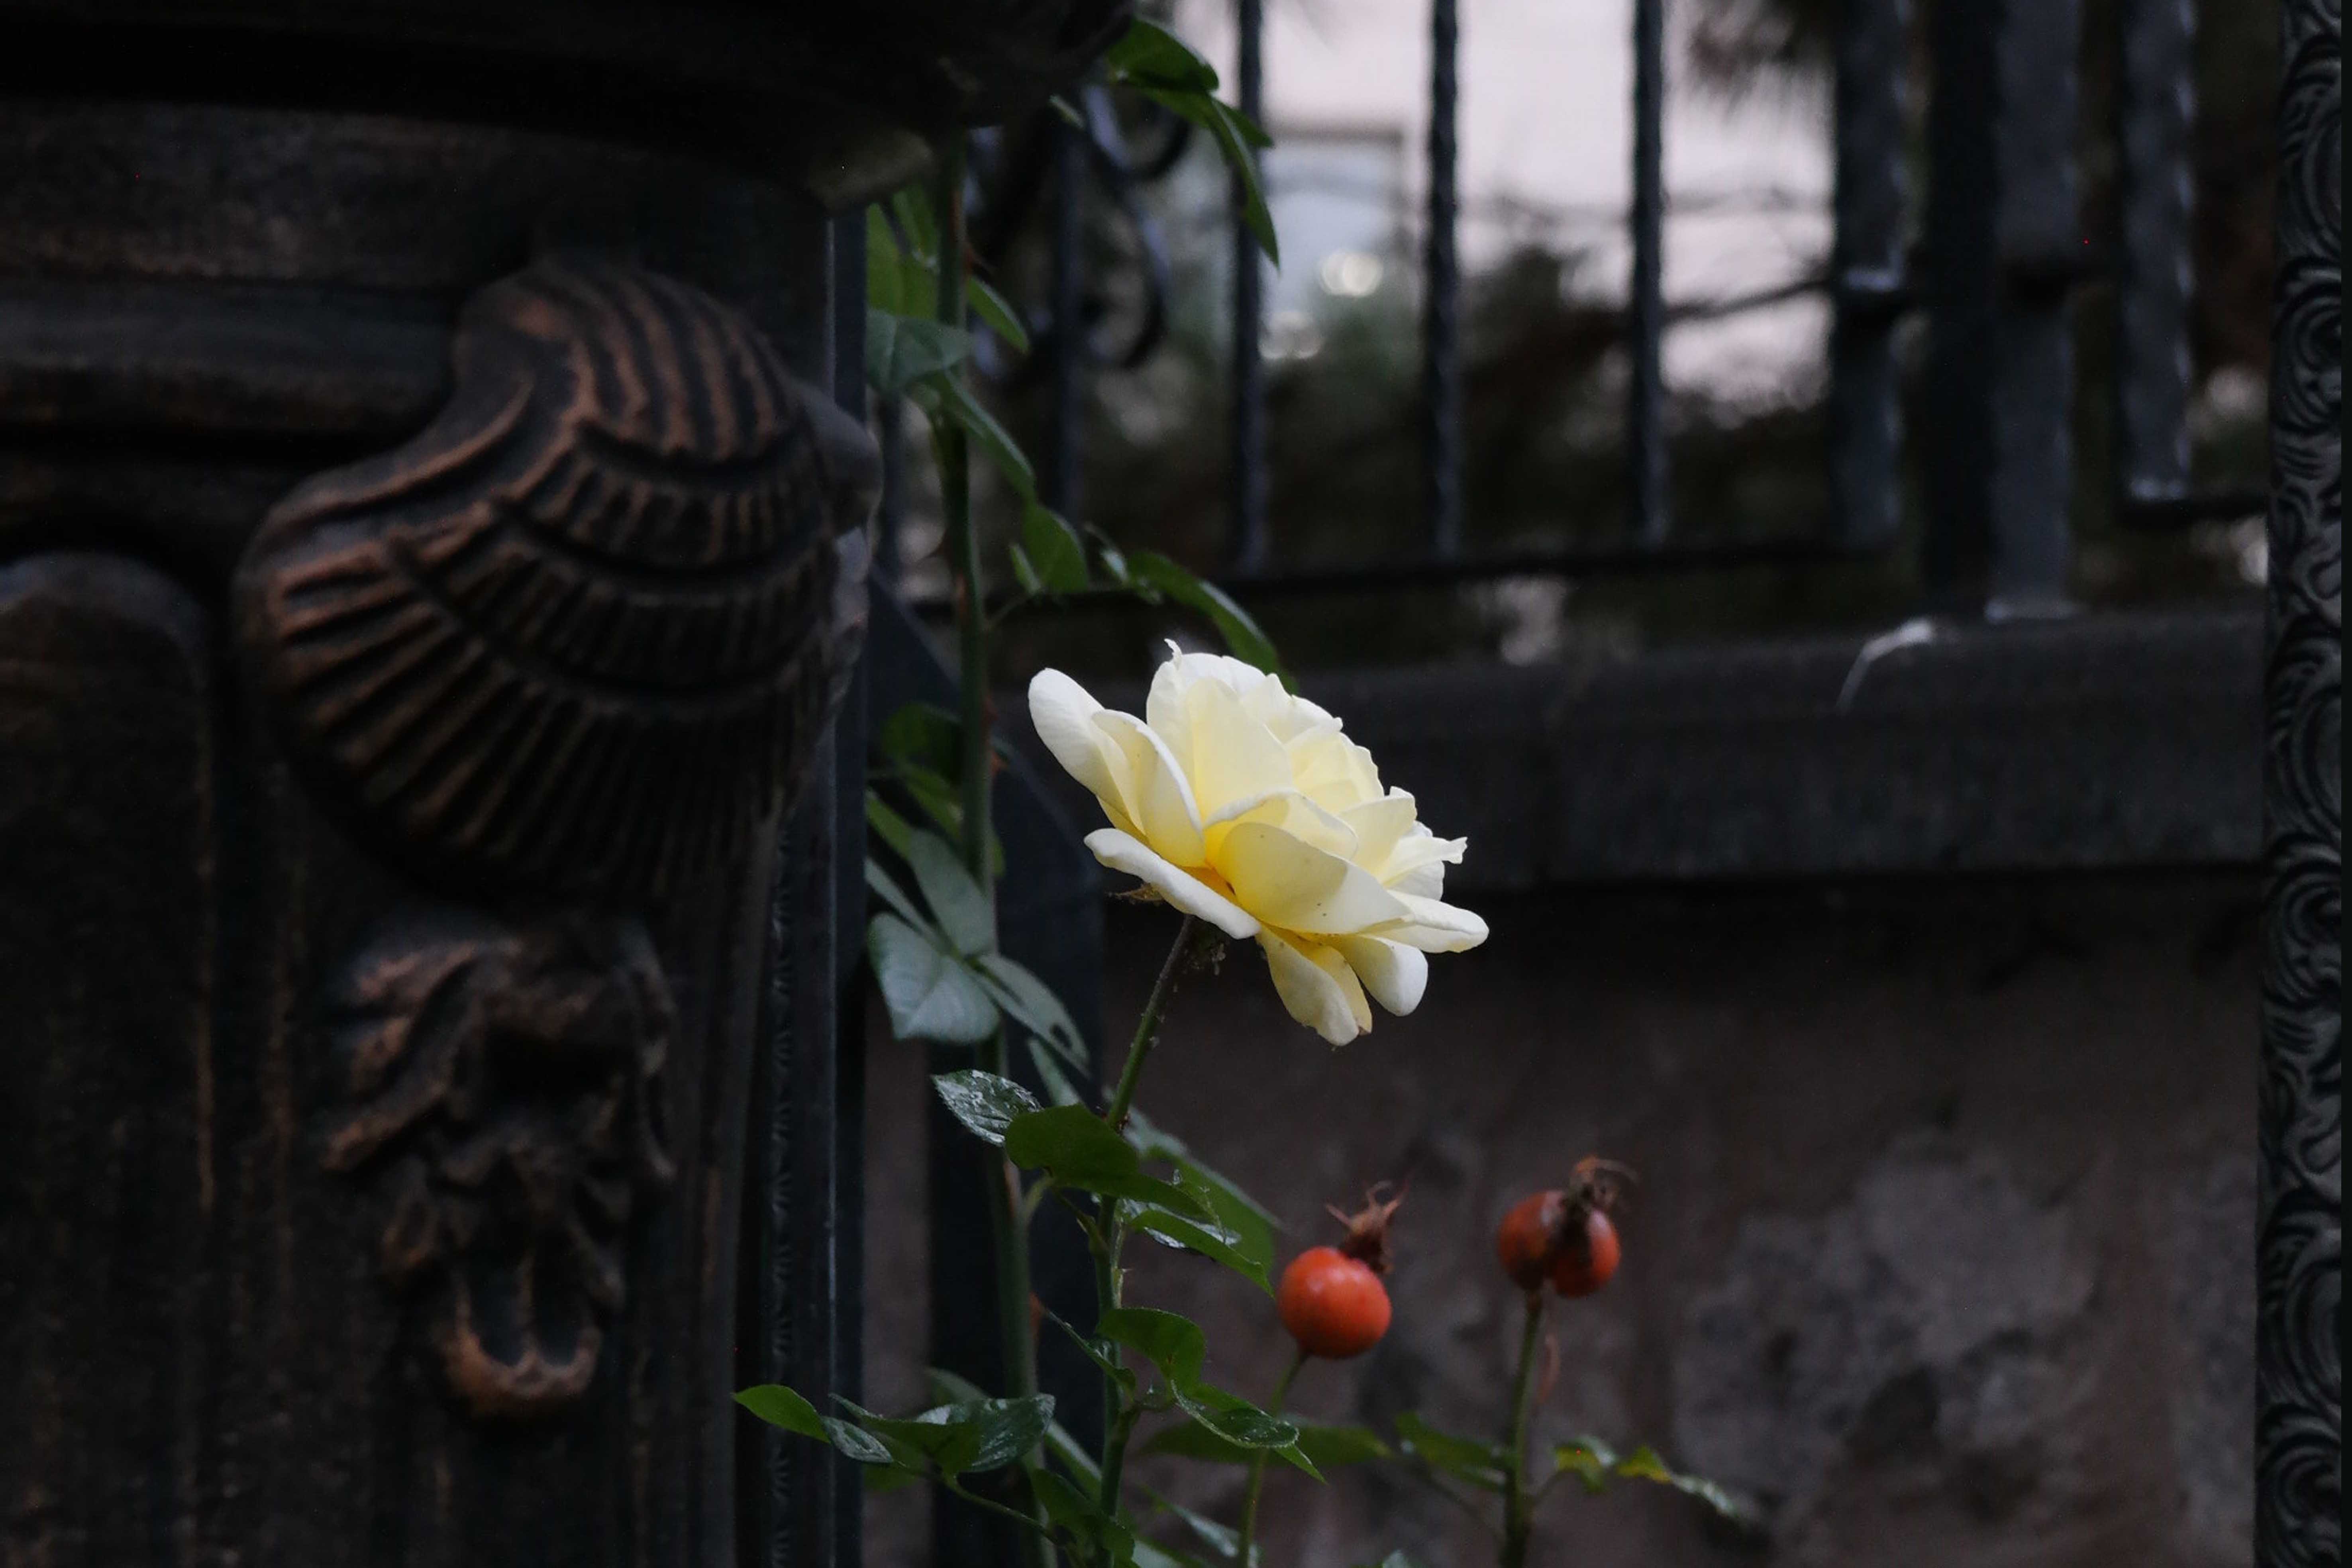 bloem bij hek